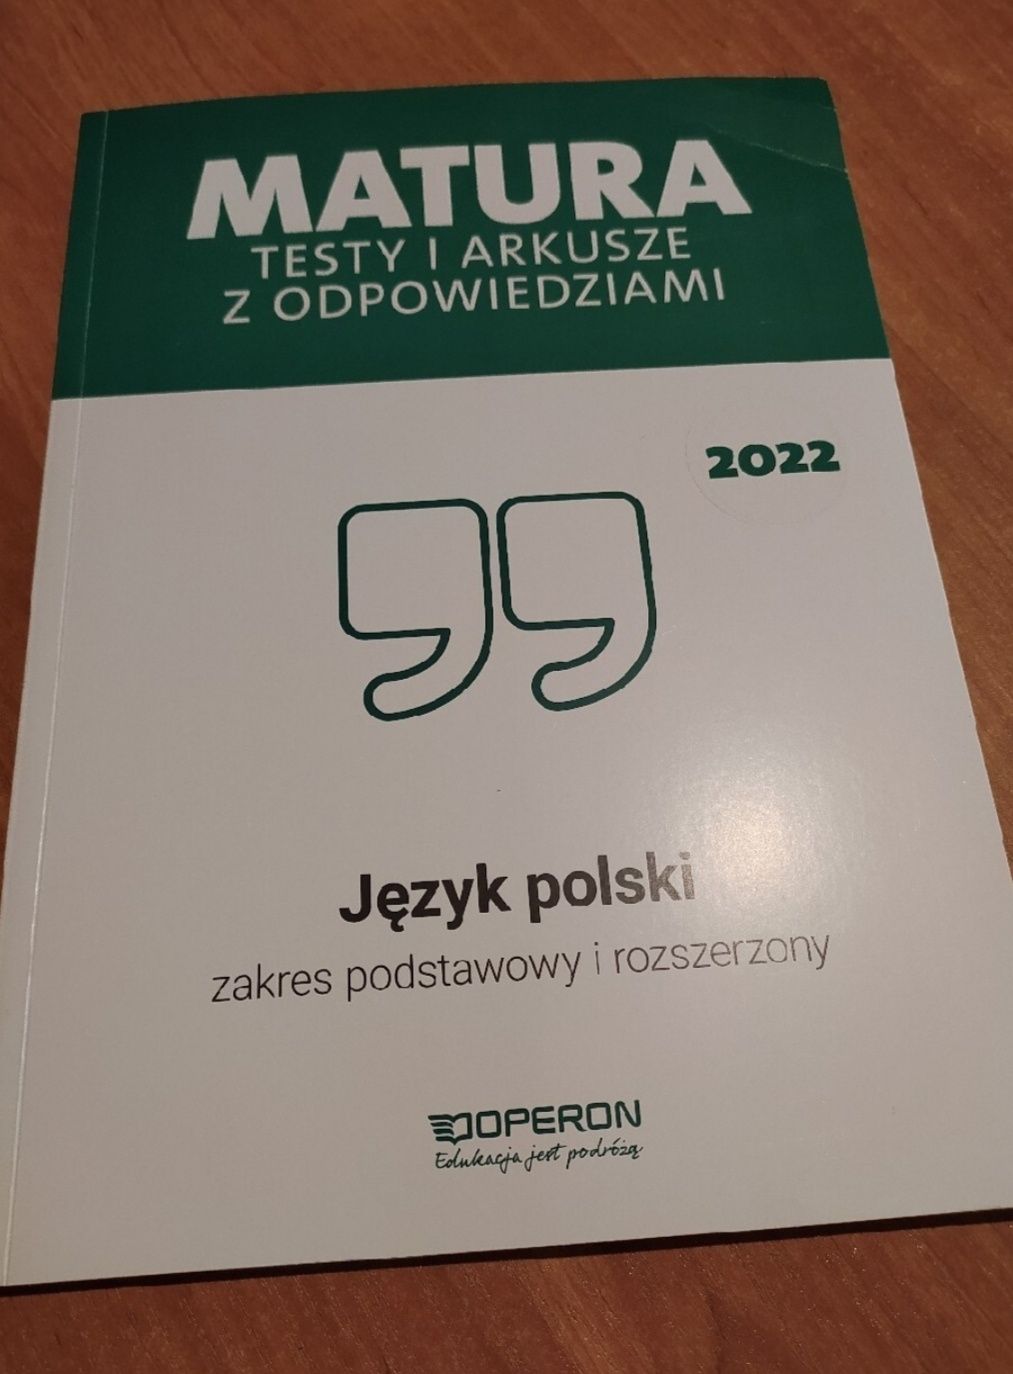 Matura Testy i Arkusze z odpowiedziami język polski 2022